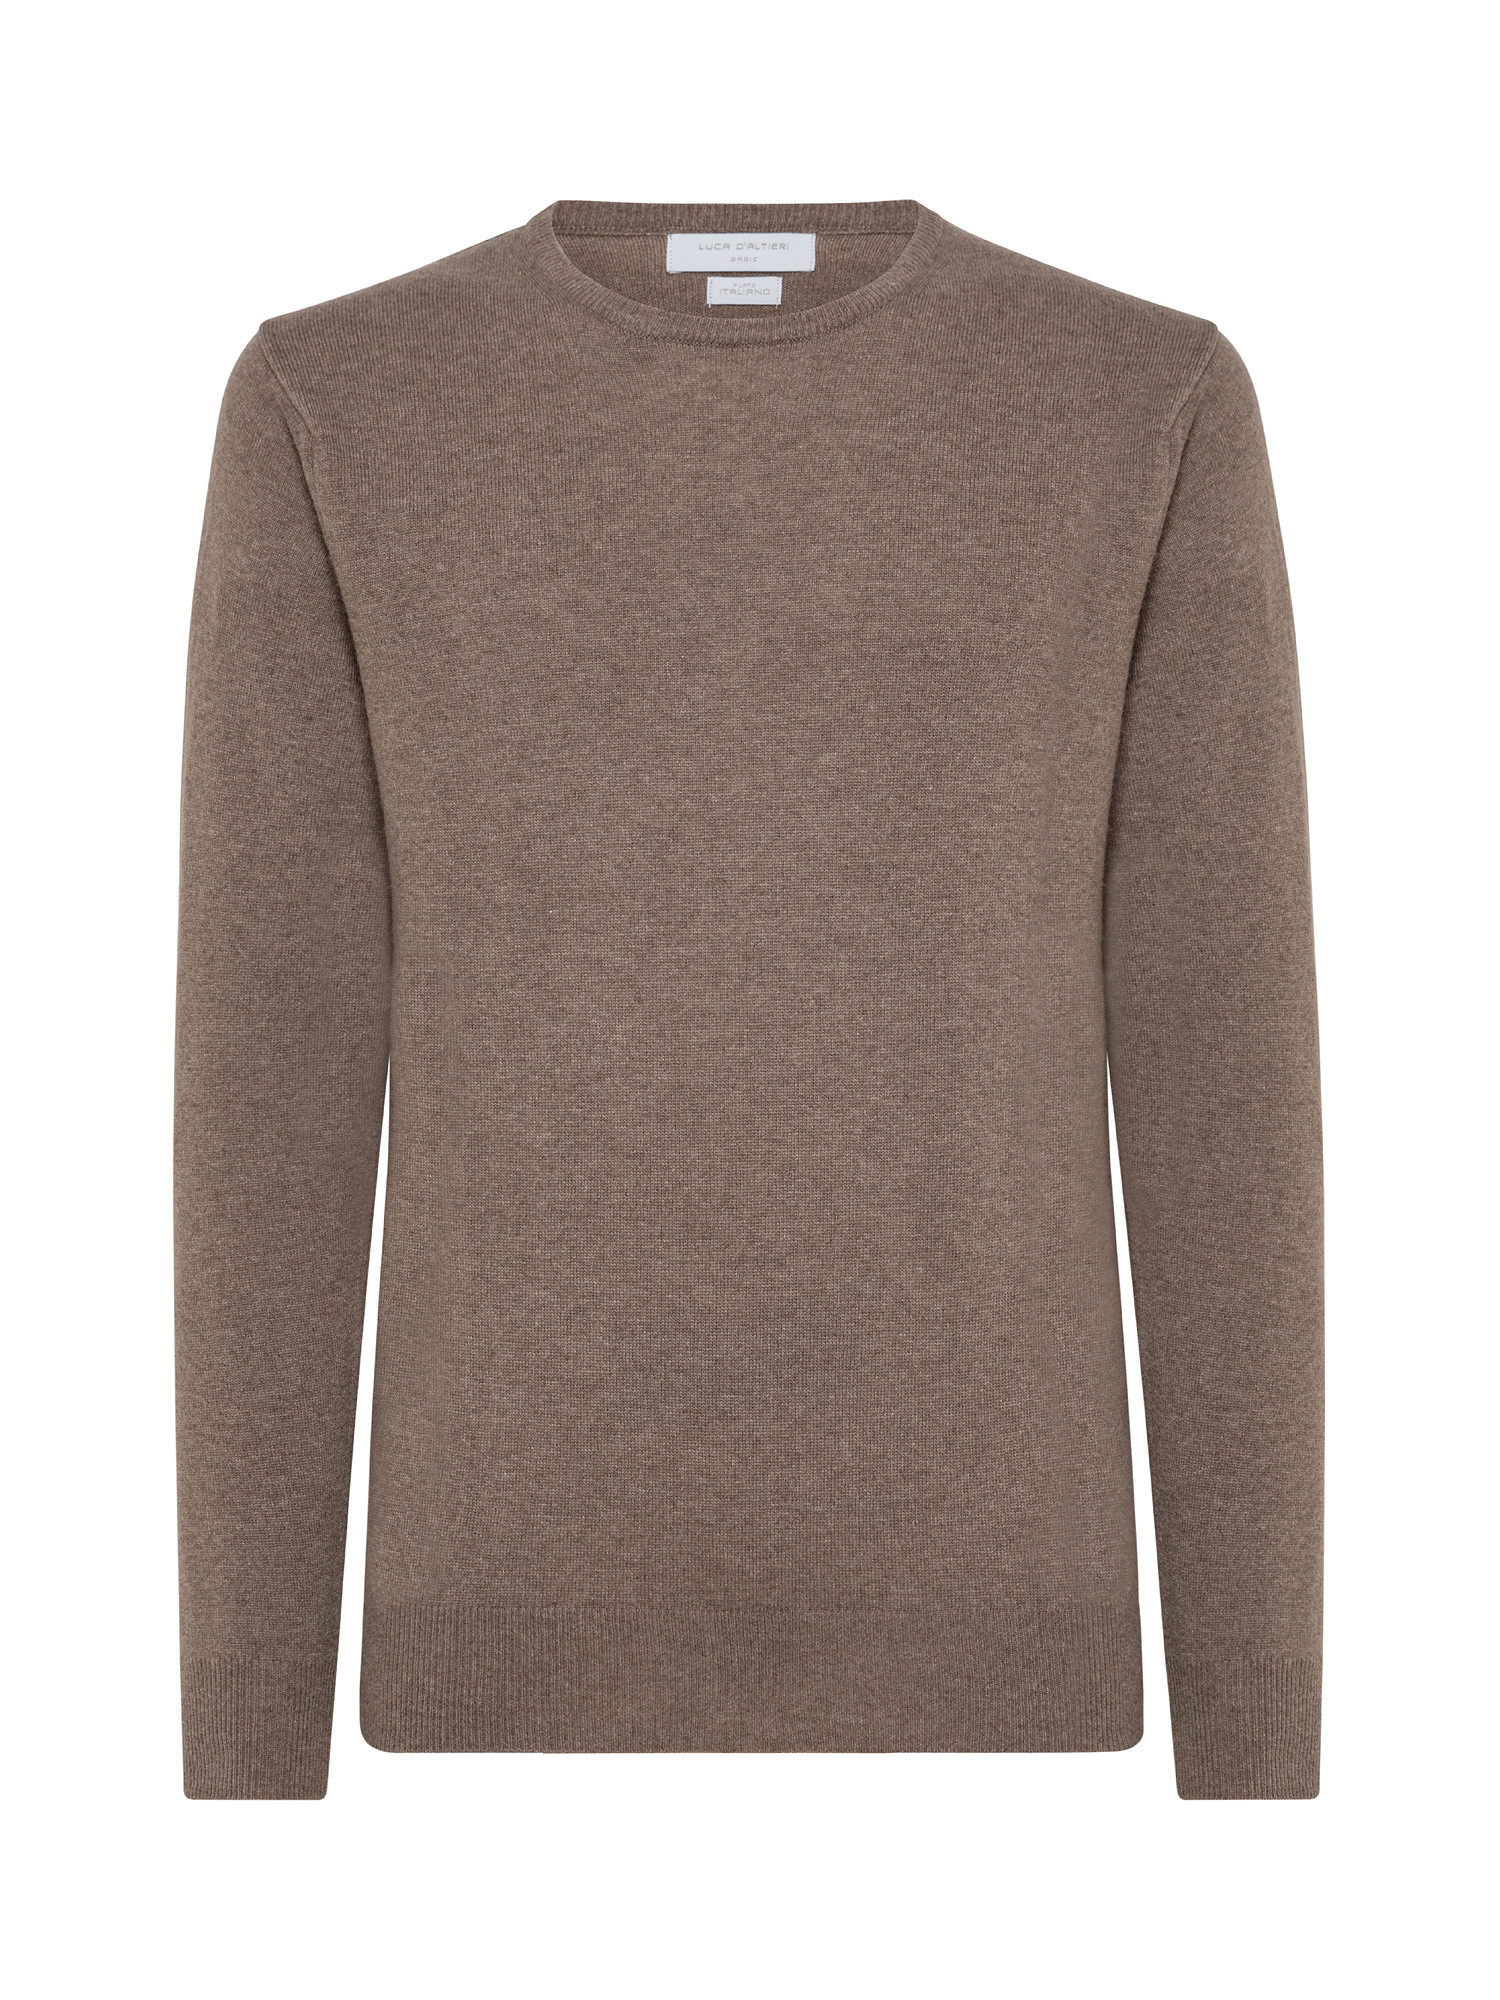 Basic cashmere blend pullover, Beige, large image number 0